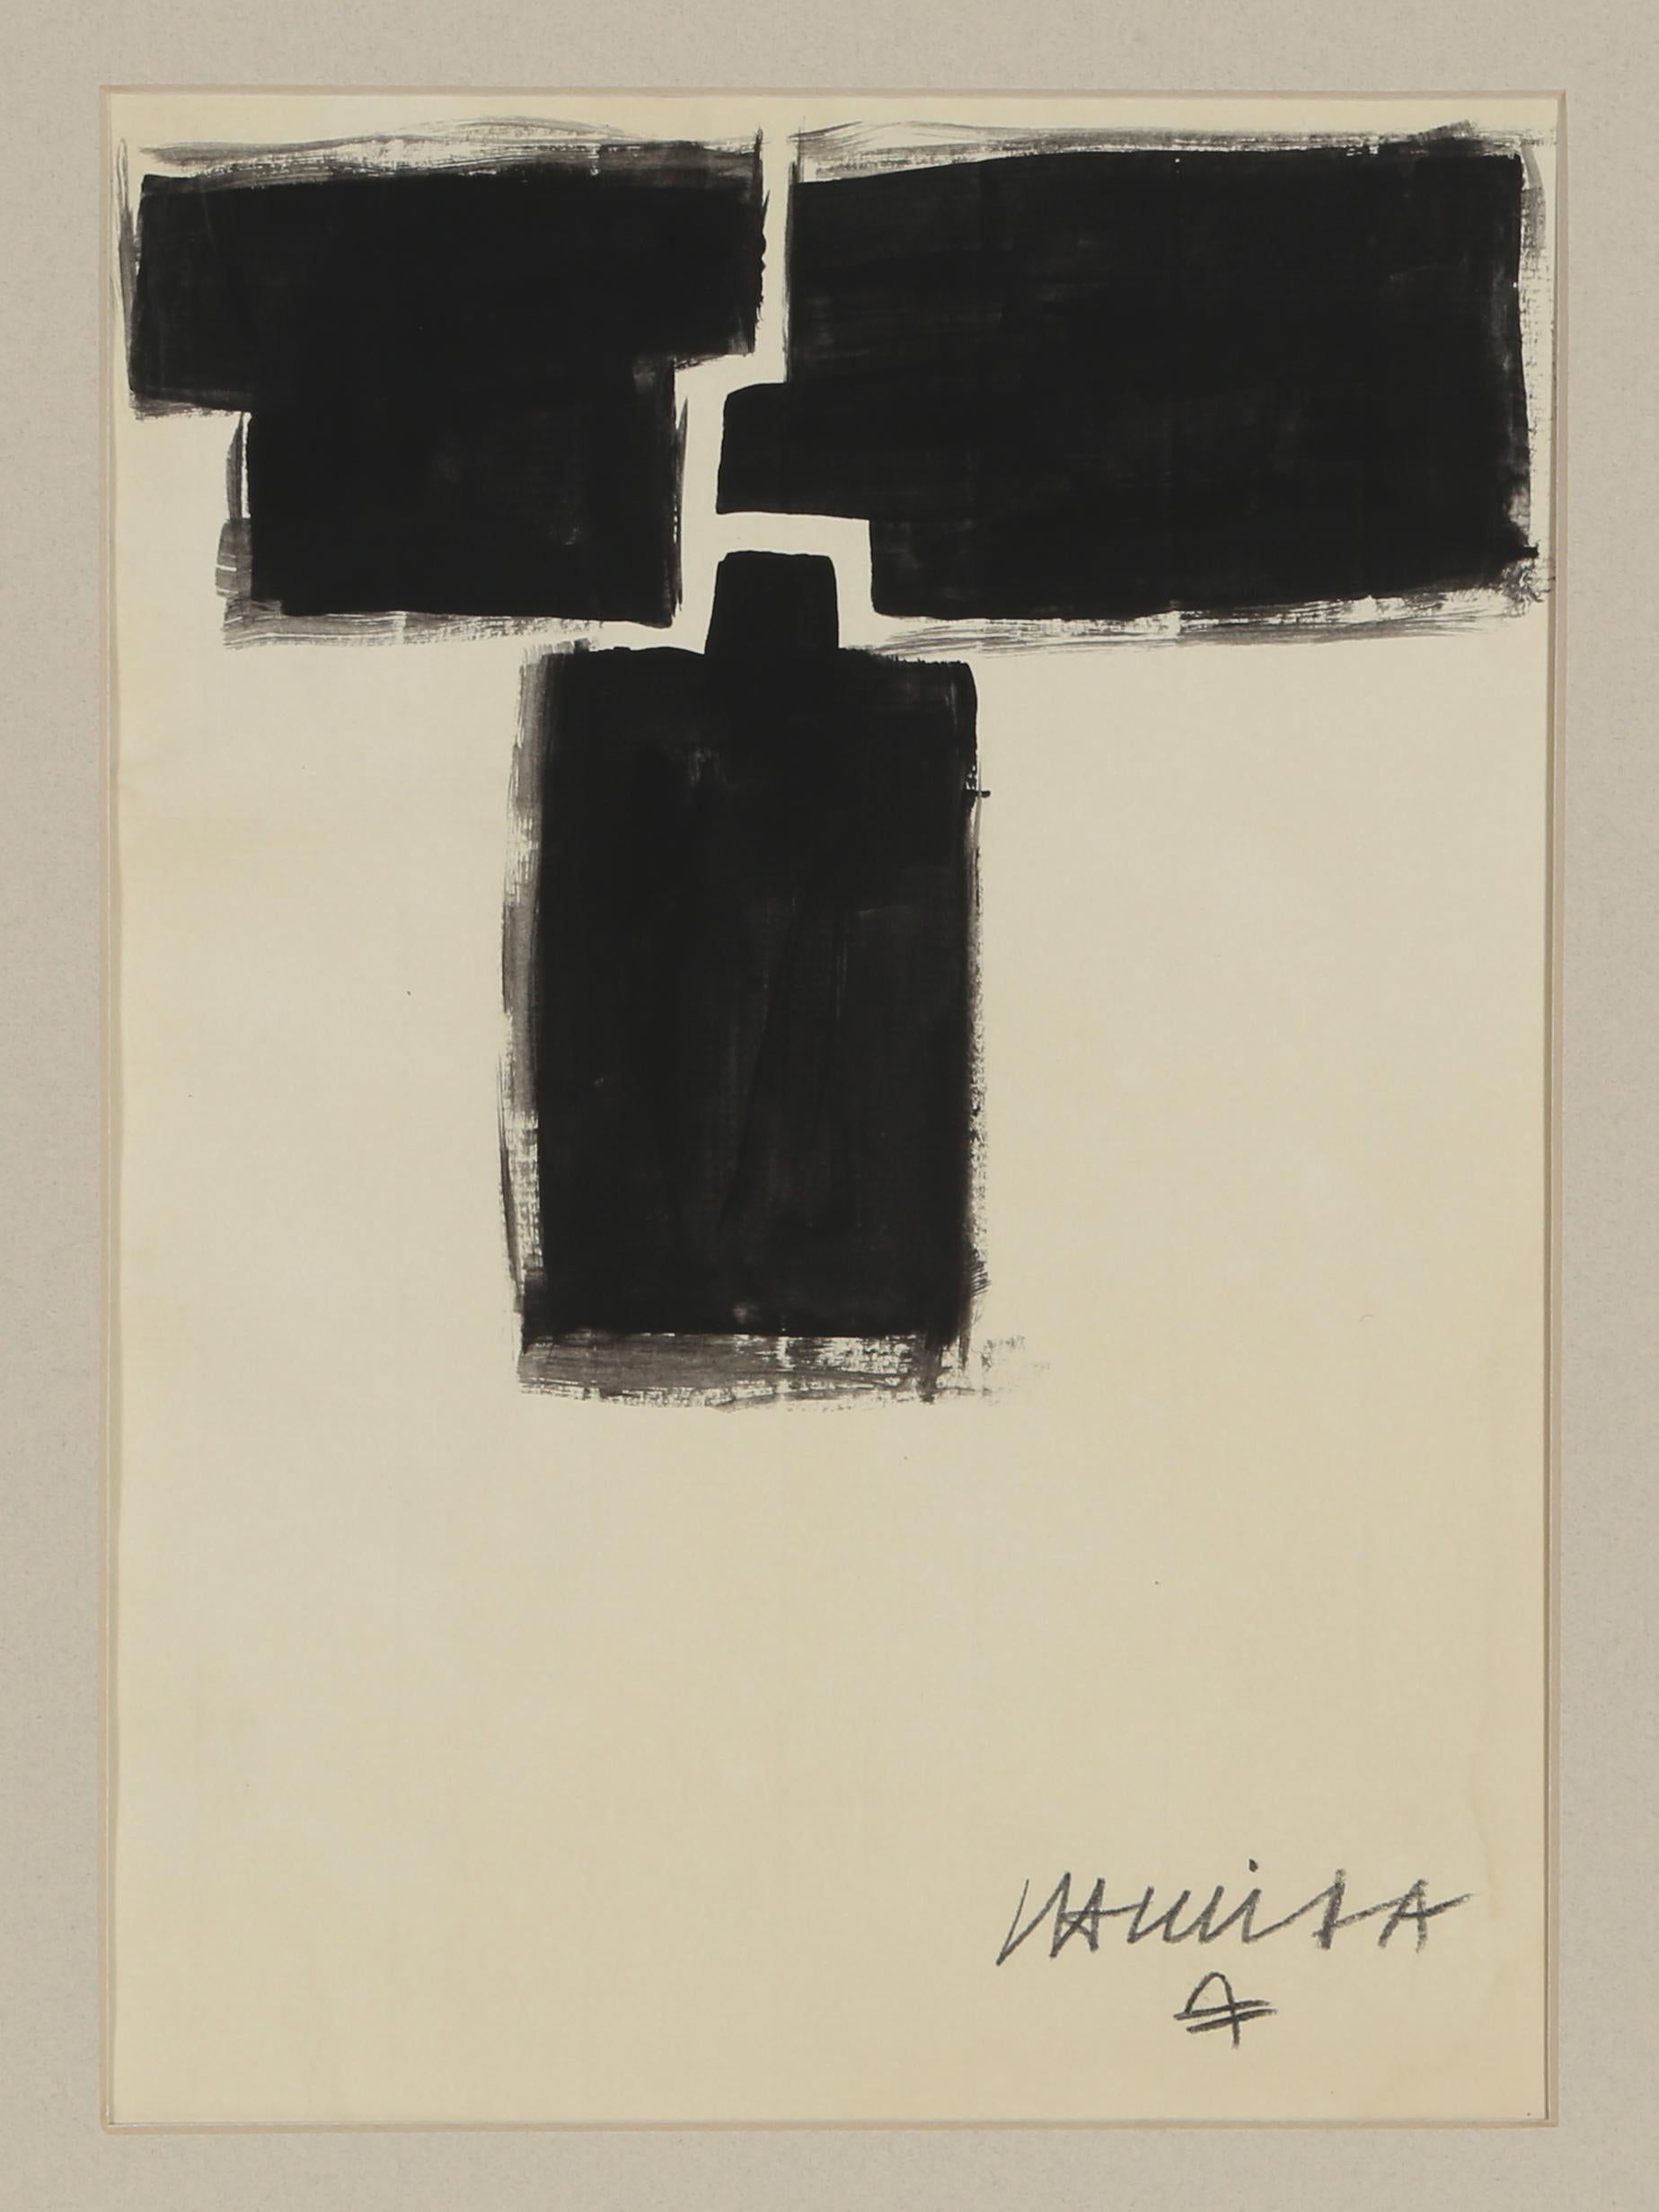 Eduardo Chillida, espagnol (1924-2002)
Encre de Chine, pinceau sur papier vergé, signé en bas à droite
Taille : 11,5 x 8 pouces
Taille du cadre : 17 x 13.7 pouces